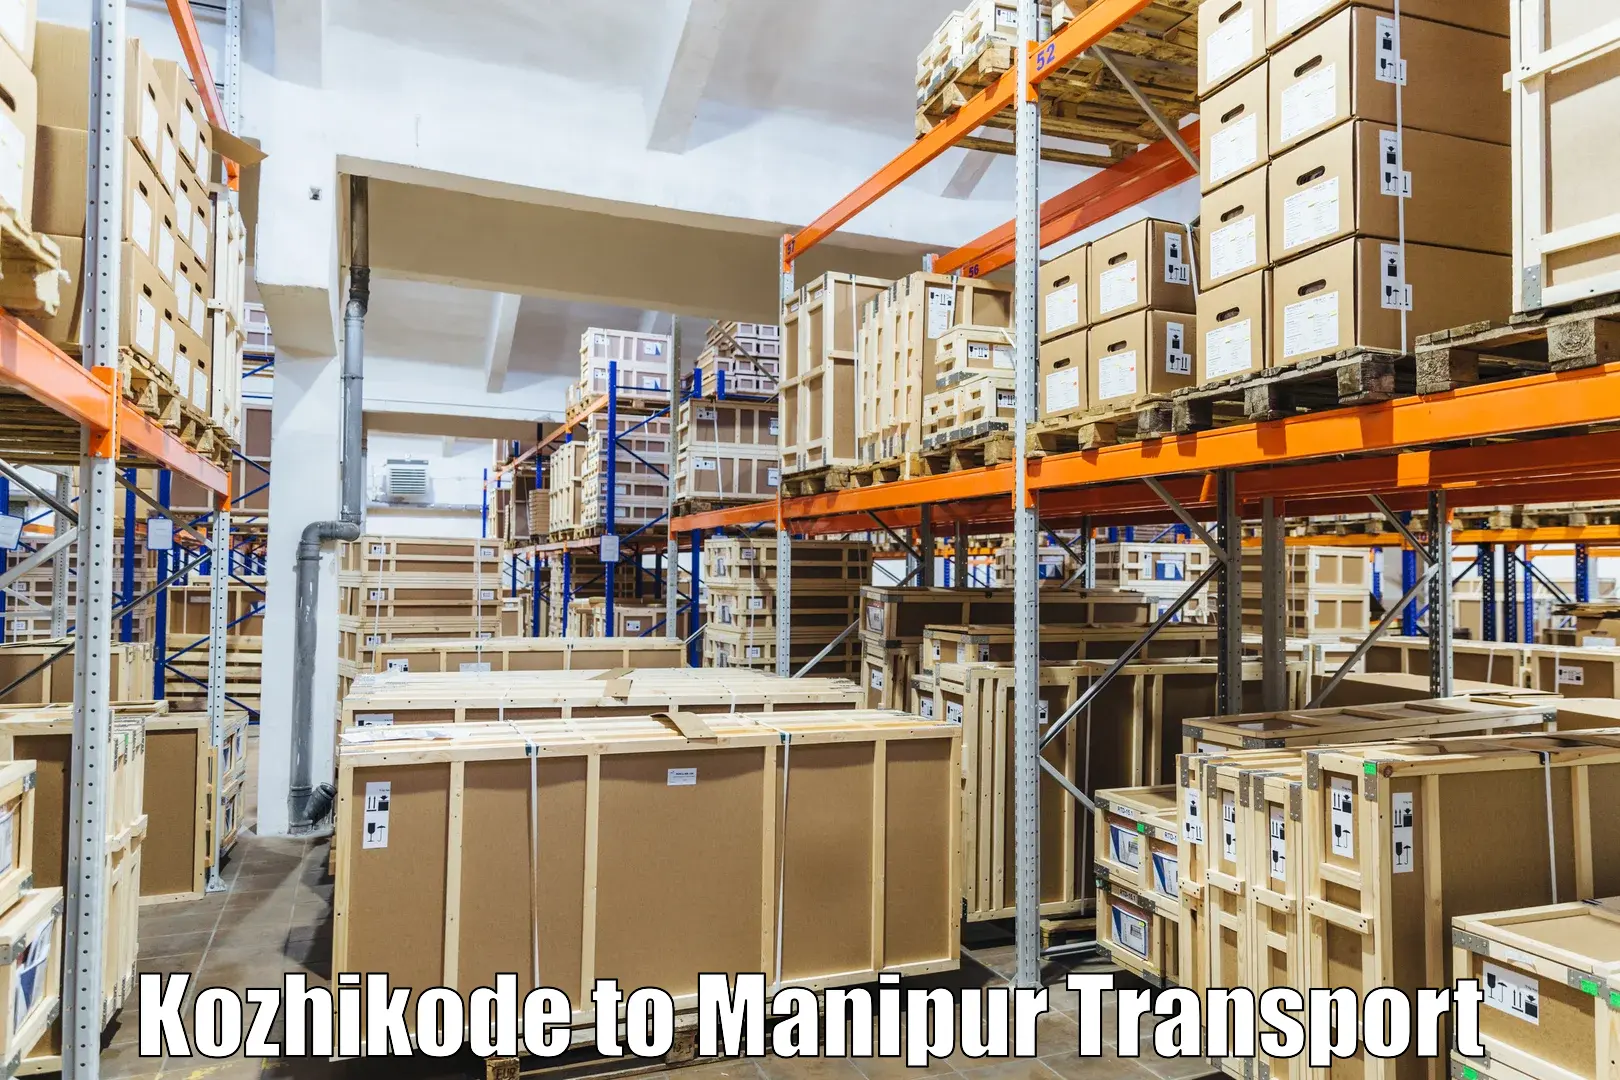 India truck logistics services Kozhikode to Kanti